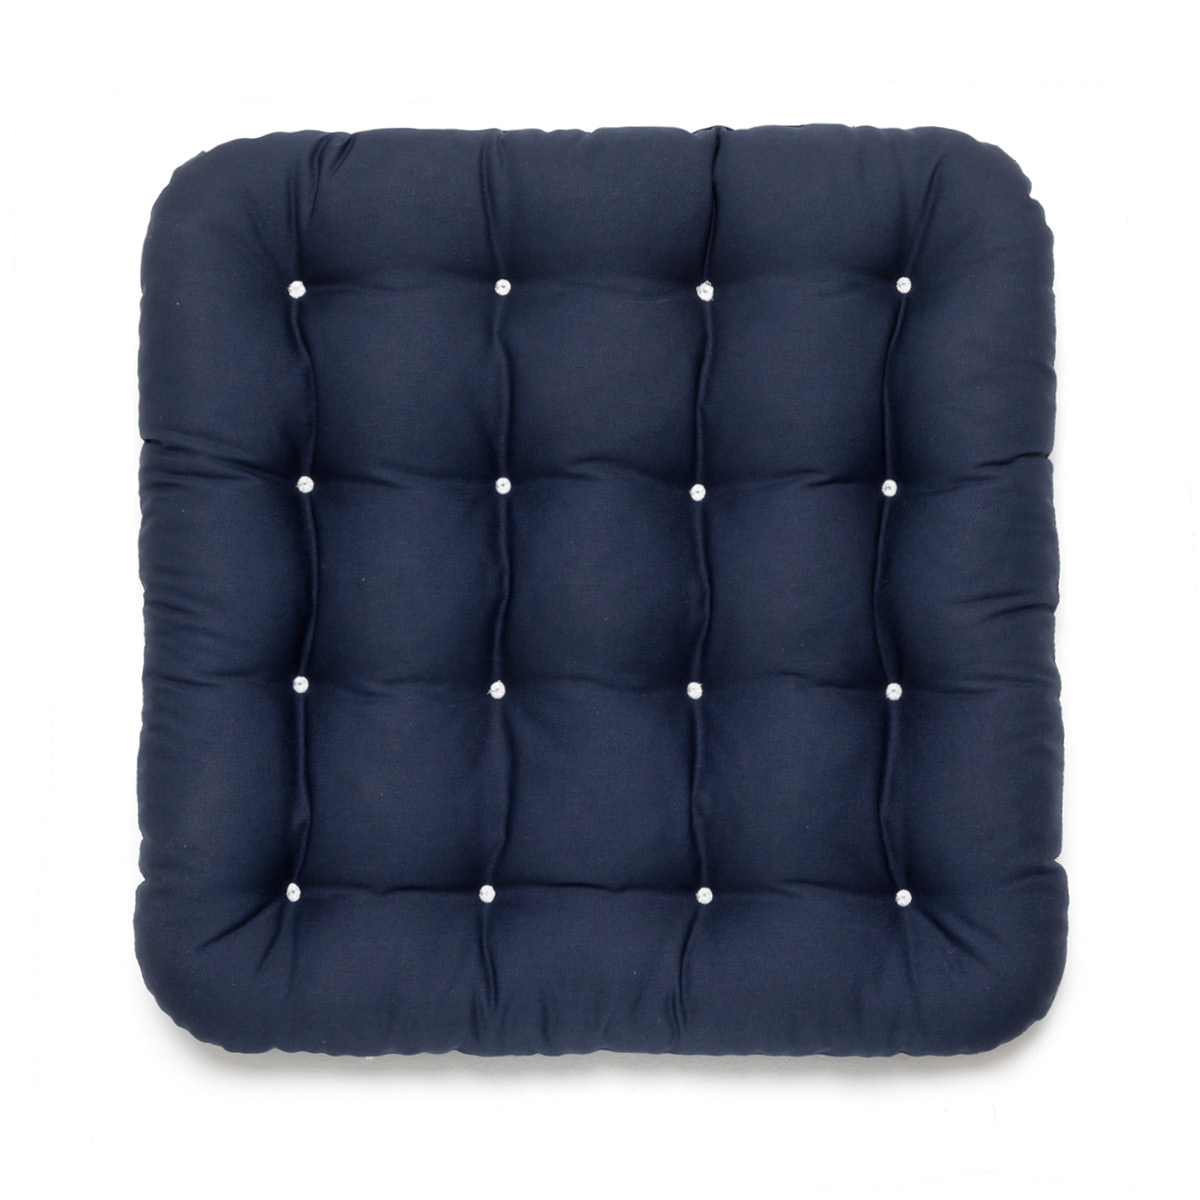 Hochwertiges Stuhlkissen 40x40 blau, Allergiker geeignet aus hautfreundlichem Baumwollstoff, gepolstert mit weißen Riegeln | HAVE A SEAT Living